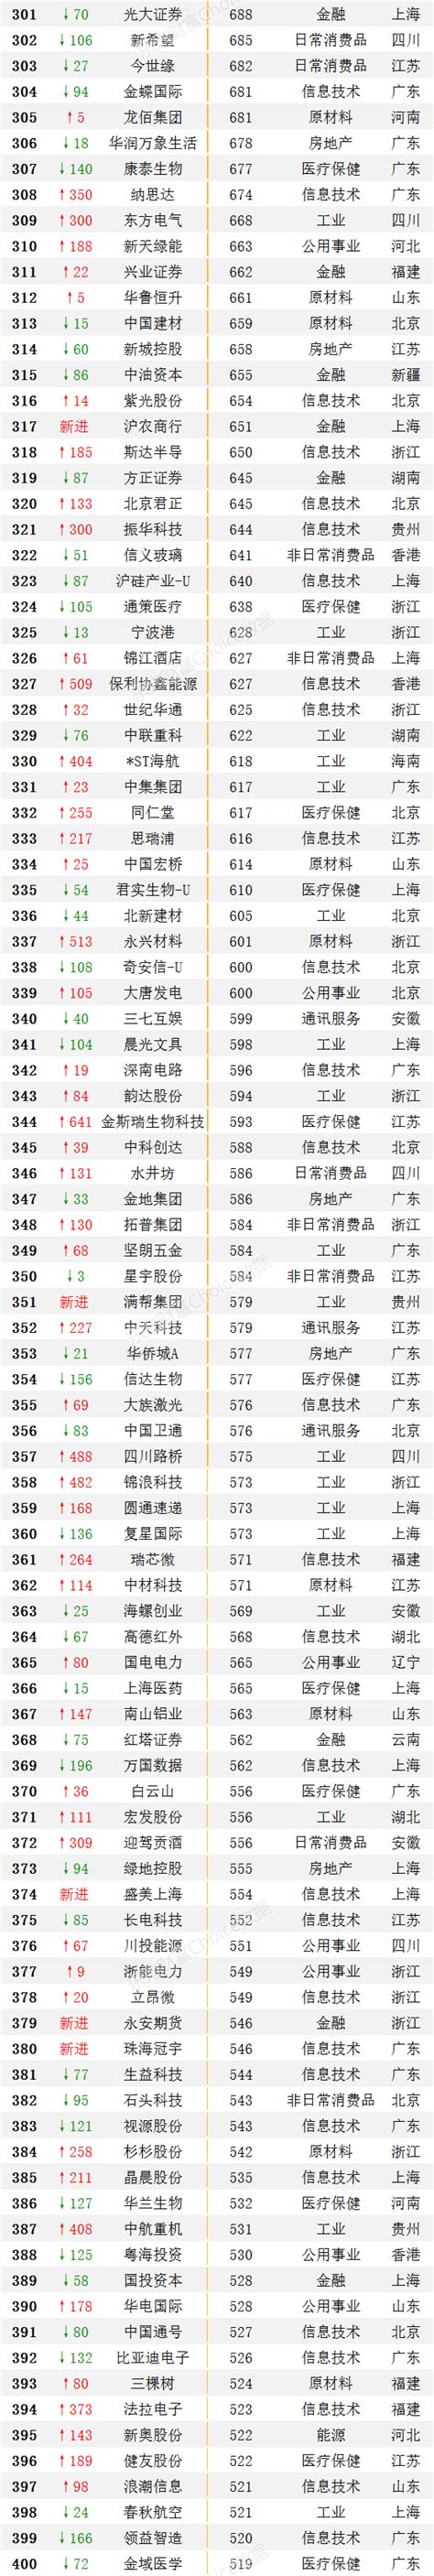 中国50强企业 ， 中国50强企业排名(2022最新名单)